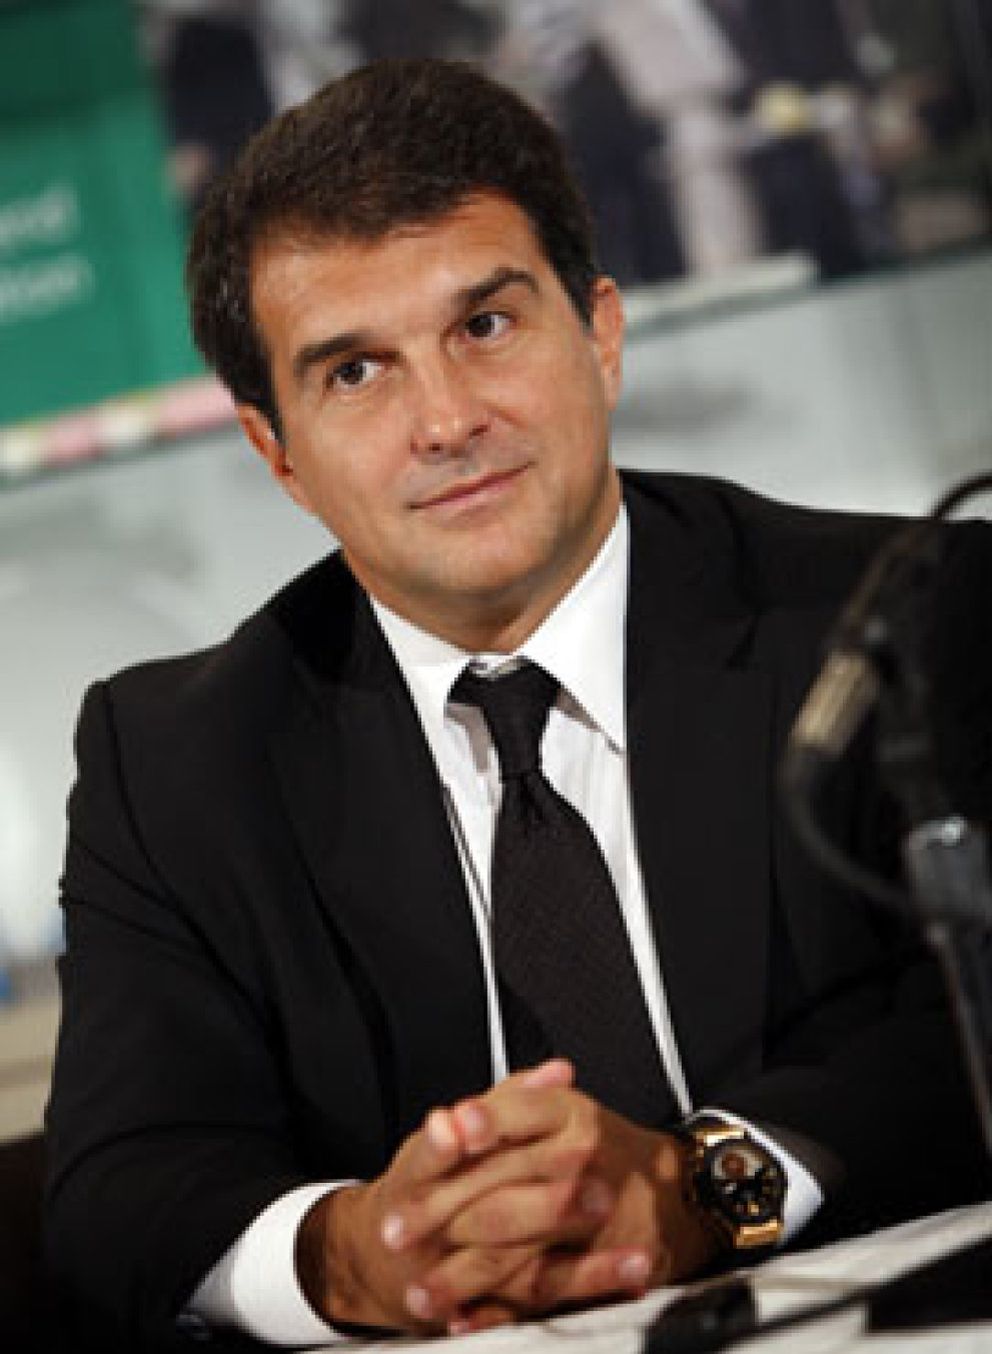 Foto: El director del Barça es socio del único candidato a presidente que no fue ‘espiado’